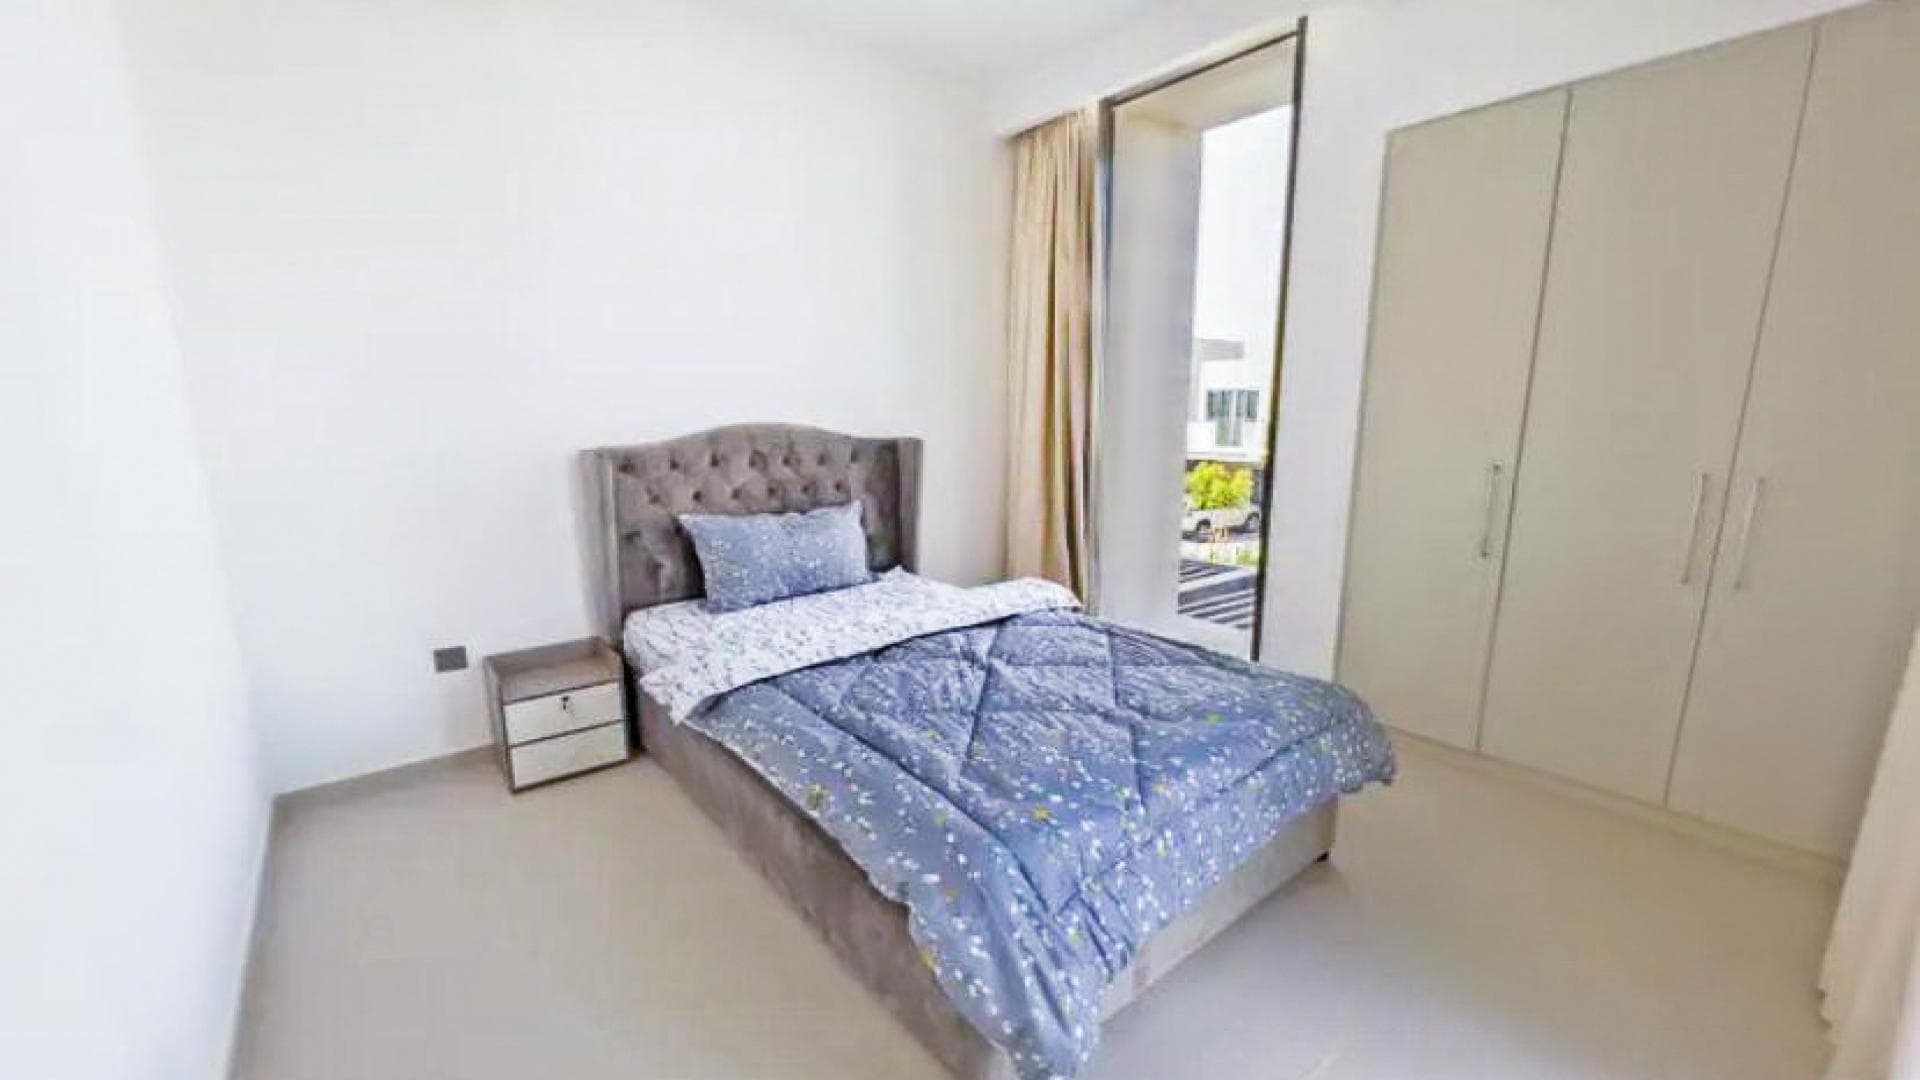 4 Bedroom Villa For Rent Warda Apartments 1b Lp36490 A5da974cf181700.jpg